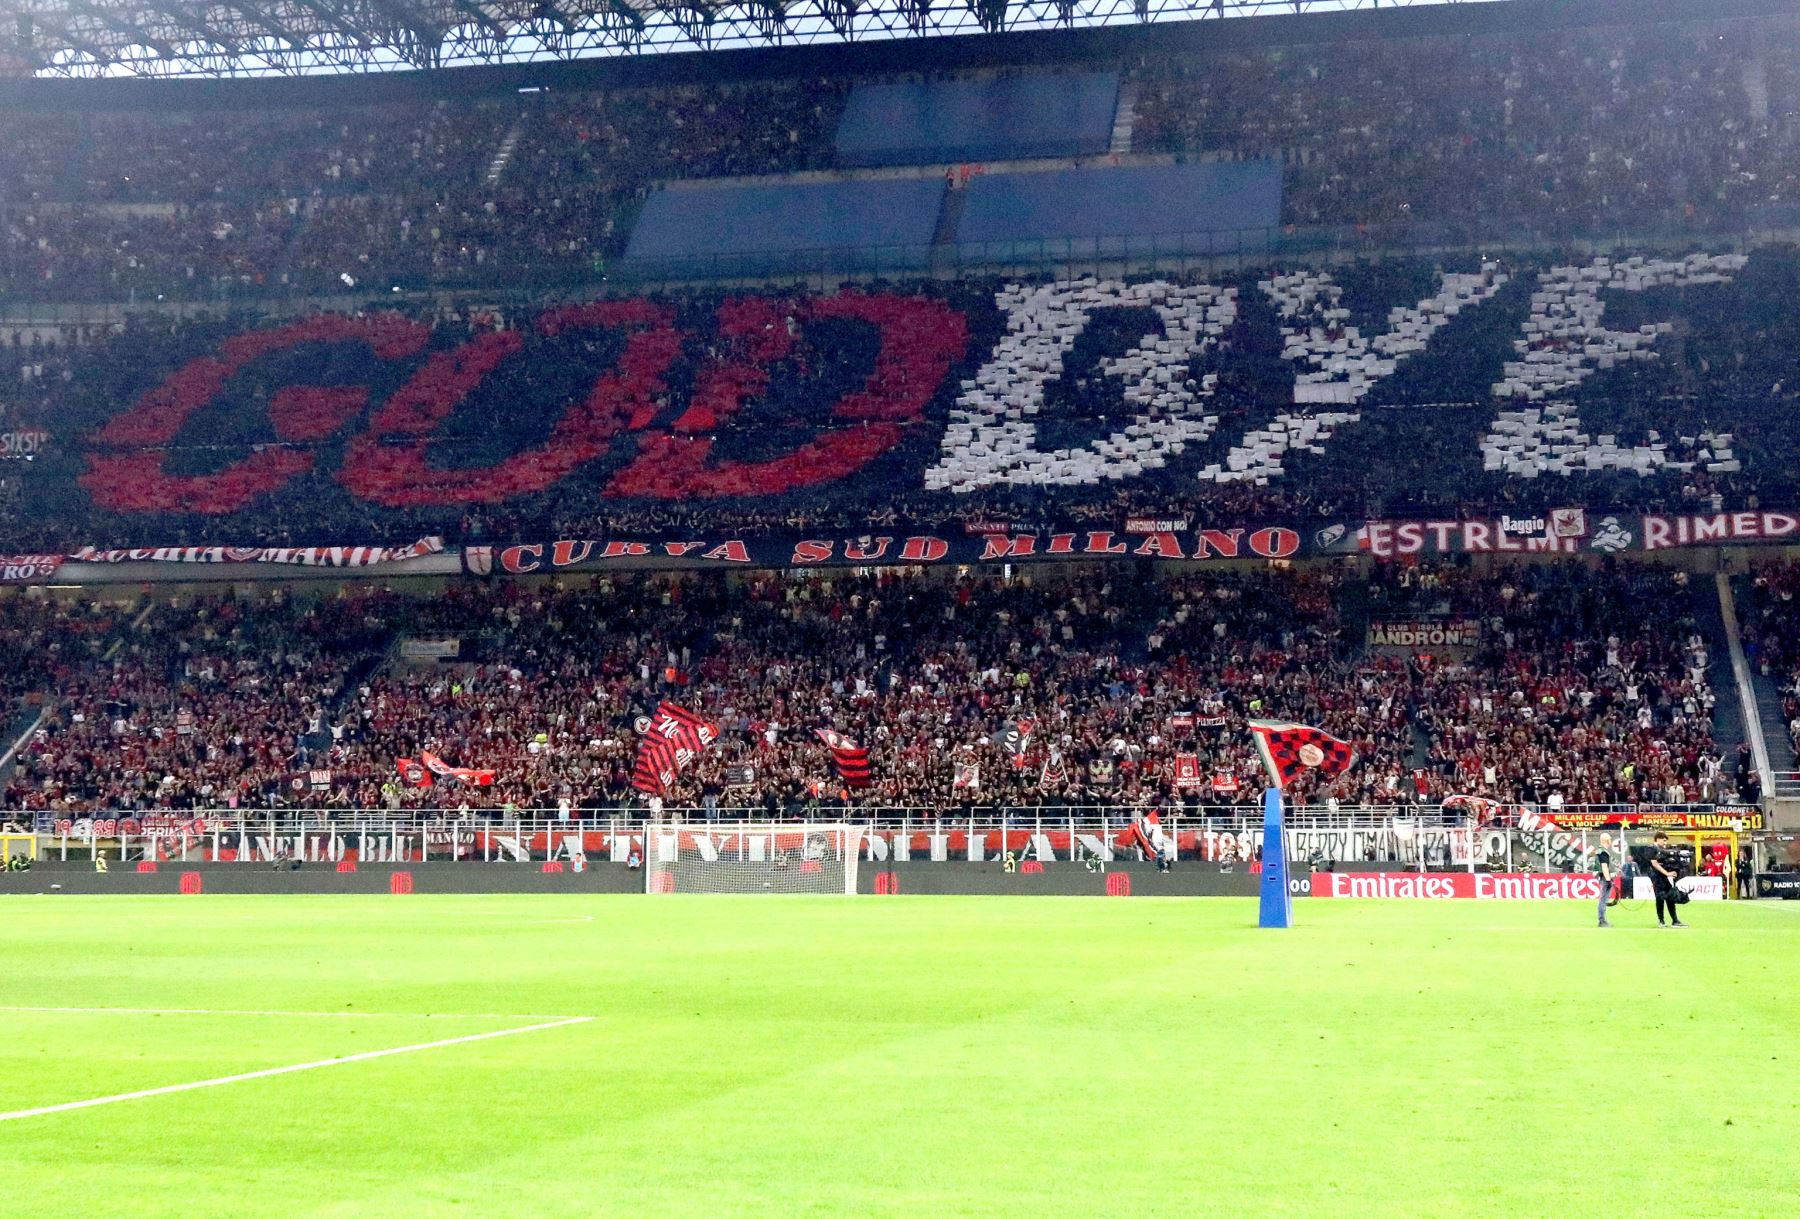 Los seguidores del Milan exhiben una pancarta en honor a Zlatan Ibrahimovic, quien abandona el club, durante el partido de fútbol de la serie A italiana entre el AC Milan y el Hellas Verona, en el estadio Giuseppe Meazza de Milán, Italia.
Foto: EFE